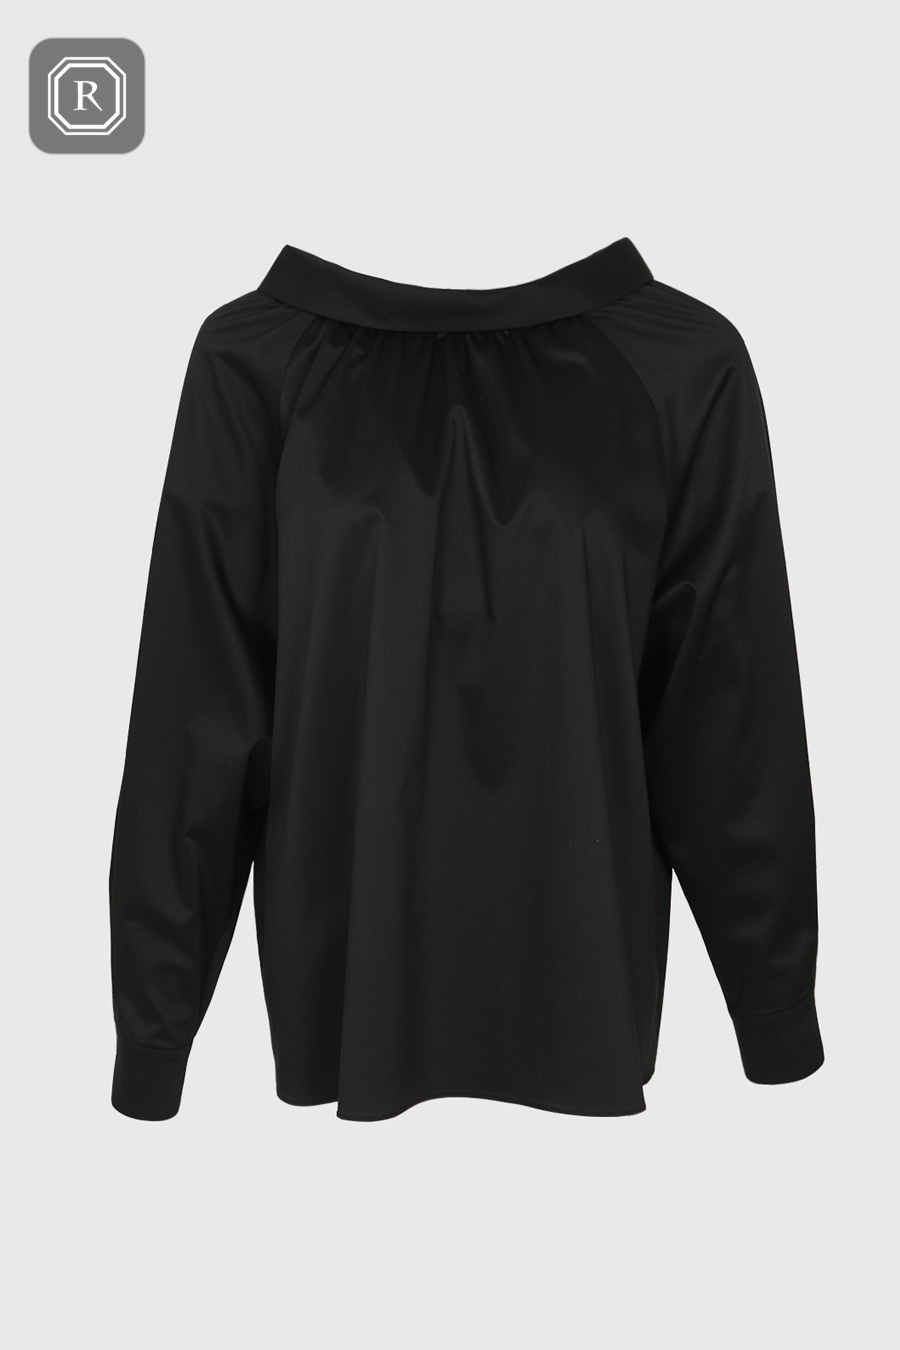 [RFSBL09BK] Back collar blouse